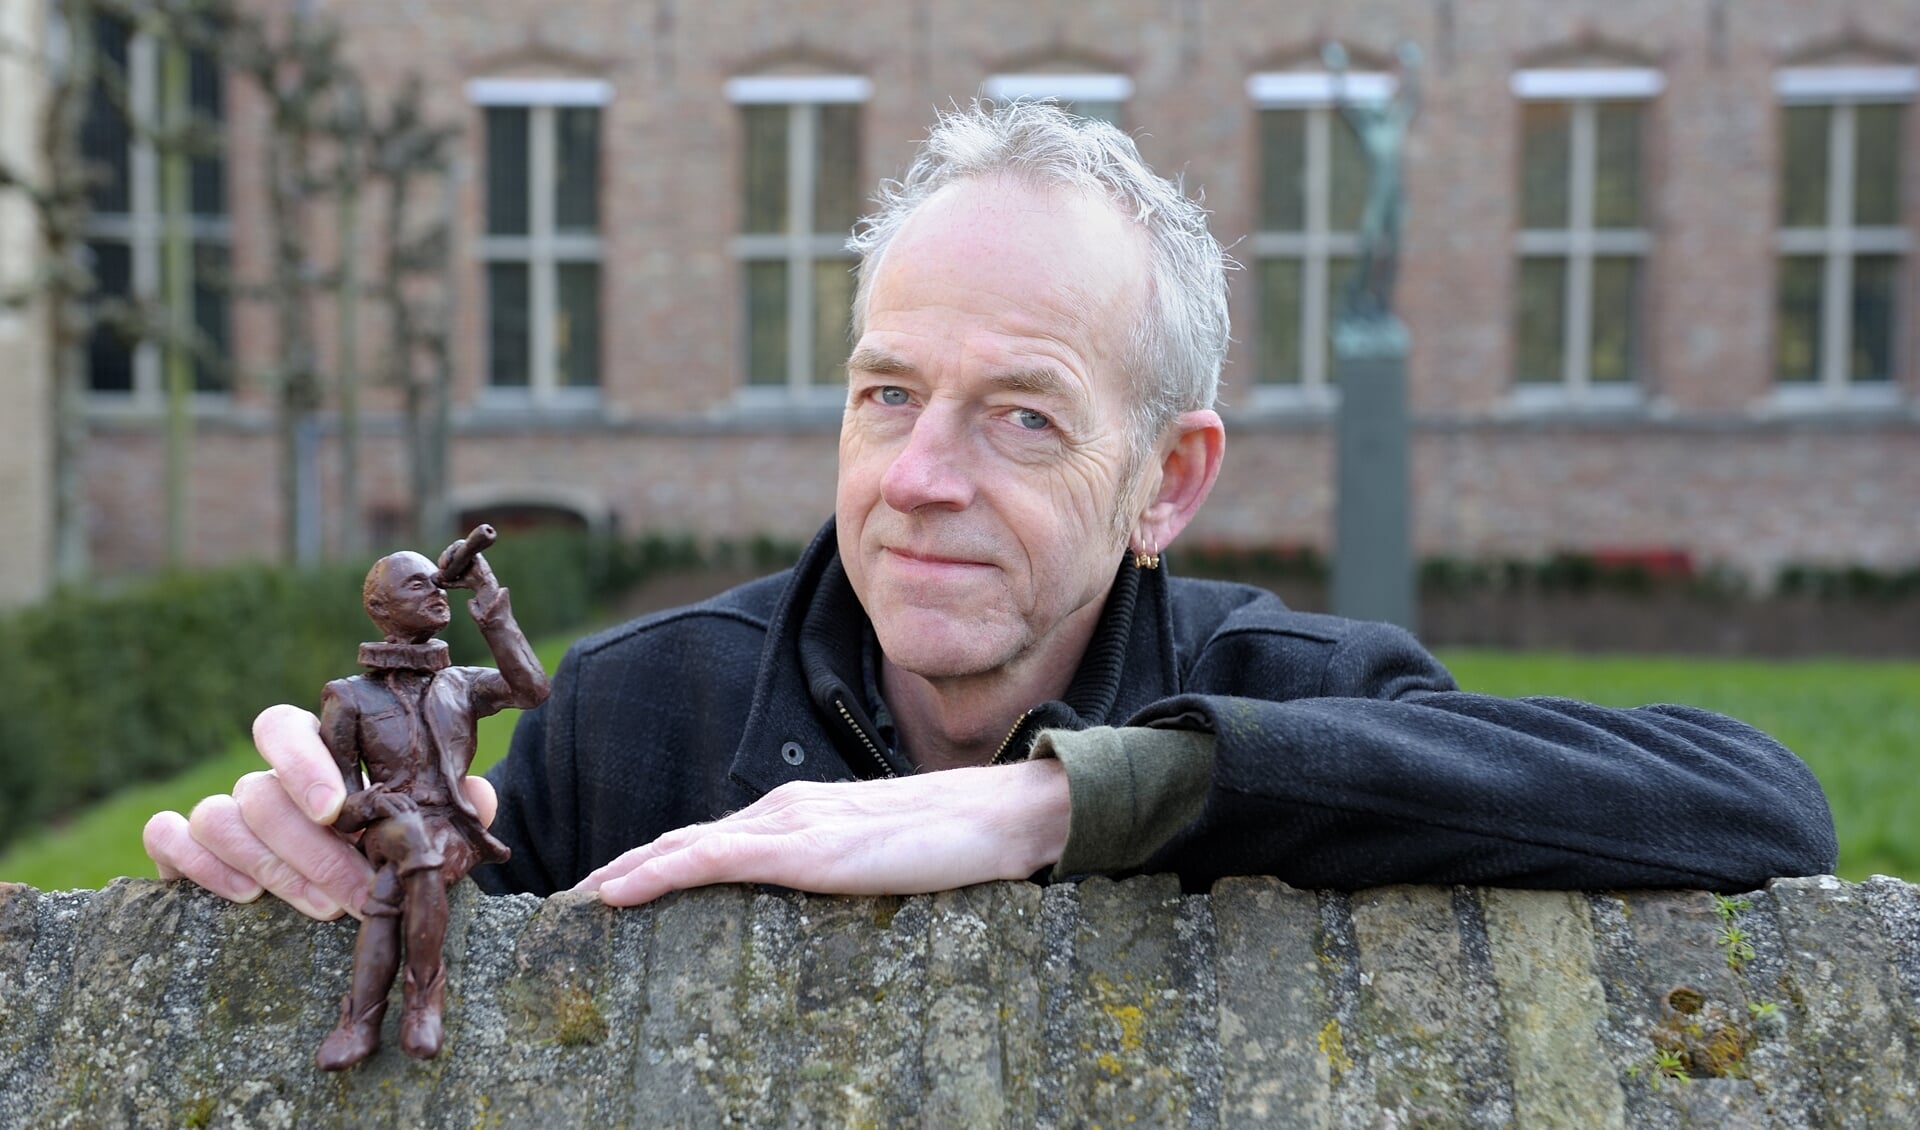 Rijk-Jan Koppejan met een model van het beeld. FOTO ANNET EEKMAN 